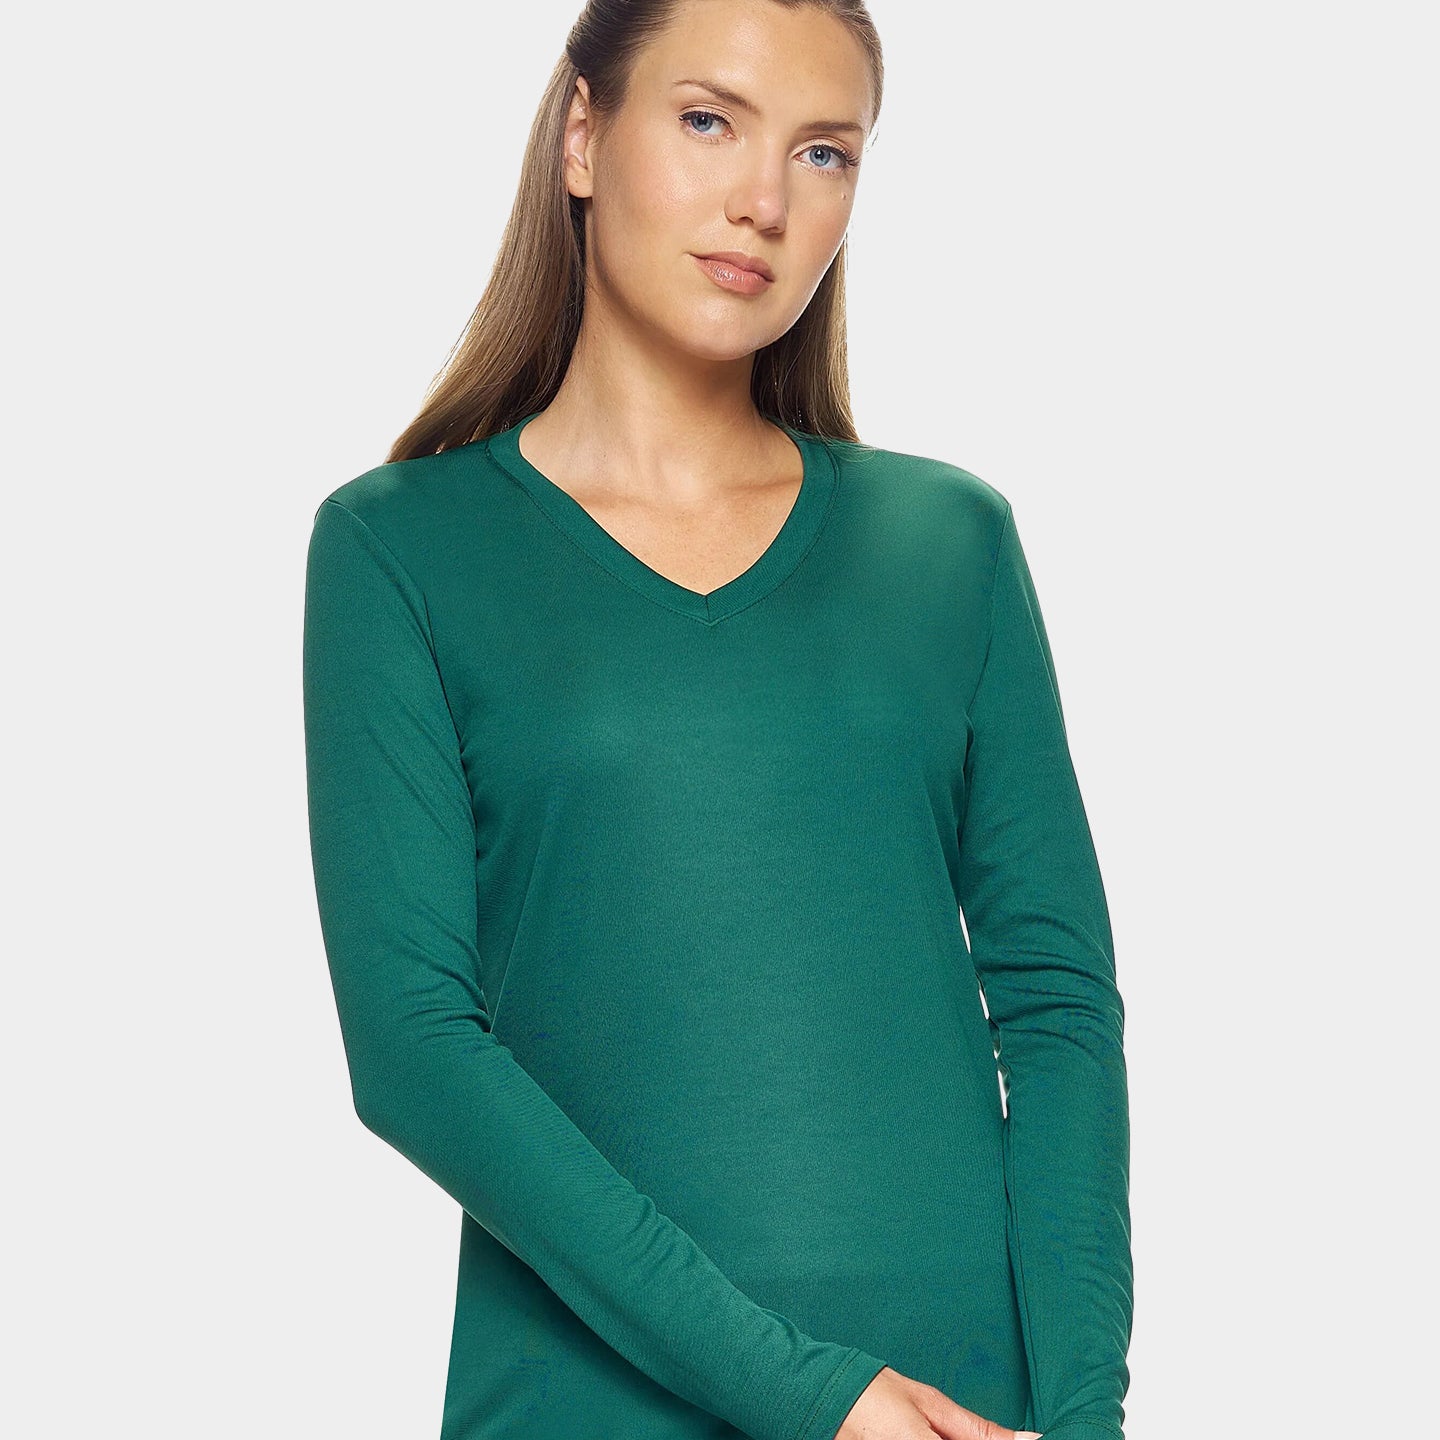 Expert Brand DriMax Women's Performance V-Neck Long Sleeve Shirt, 3XL, Forest Green A1